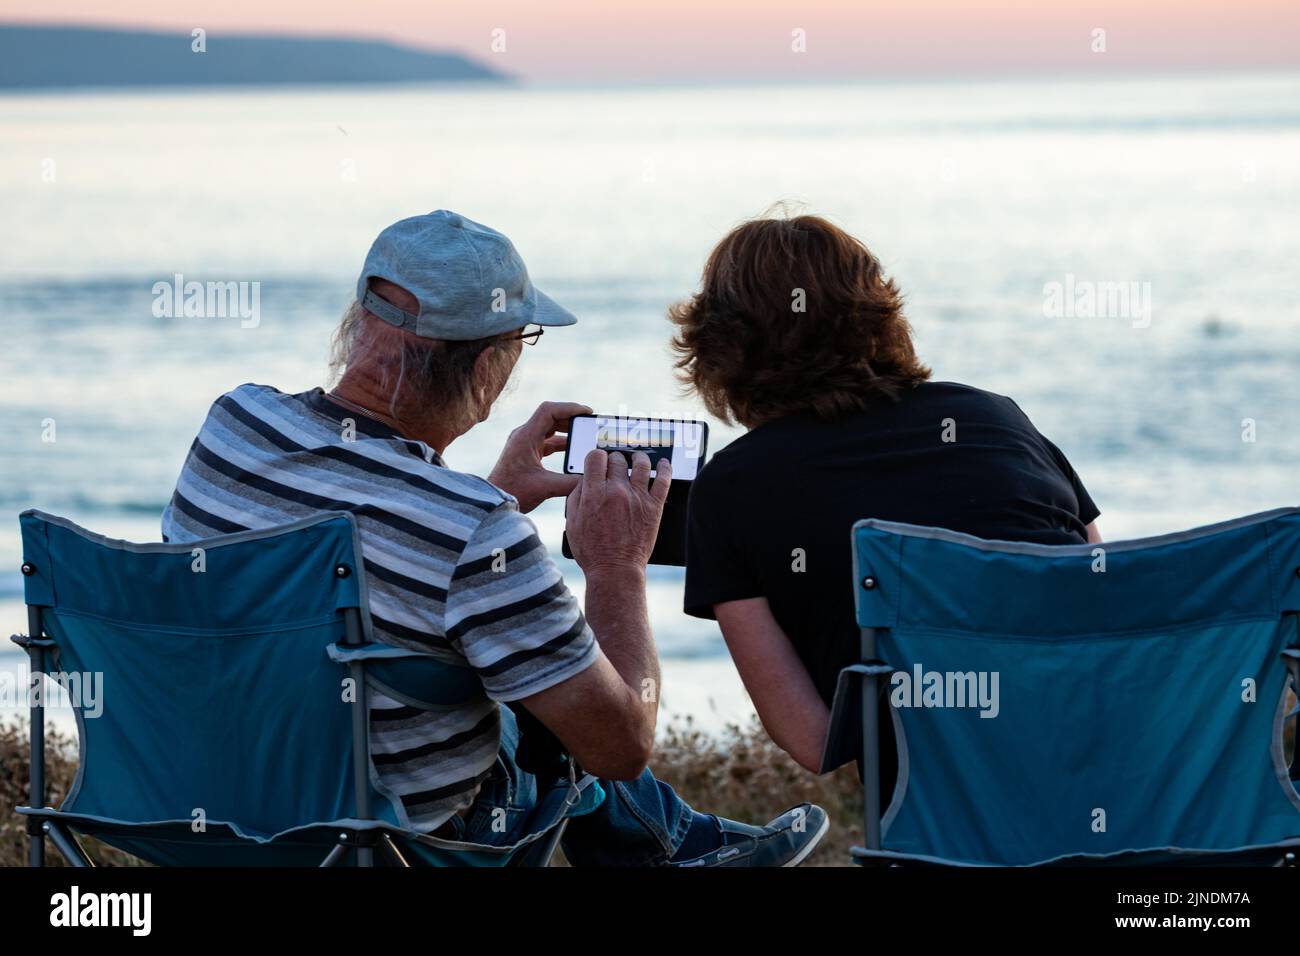 Zwei Personen sitzen auf Campingstühlen, um den Sonnenuntergang in Godrevy, Cornwall, Großbritannien, zu beobachten und zu fotografieren Stockfoto